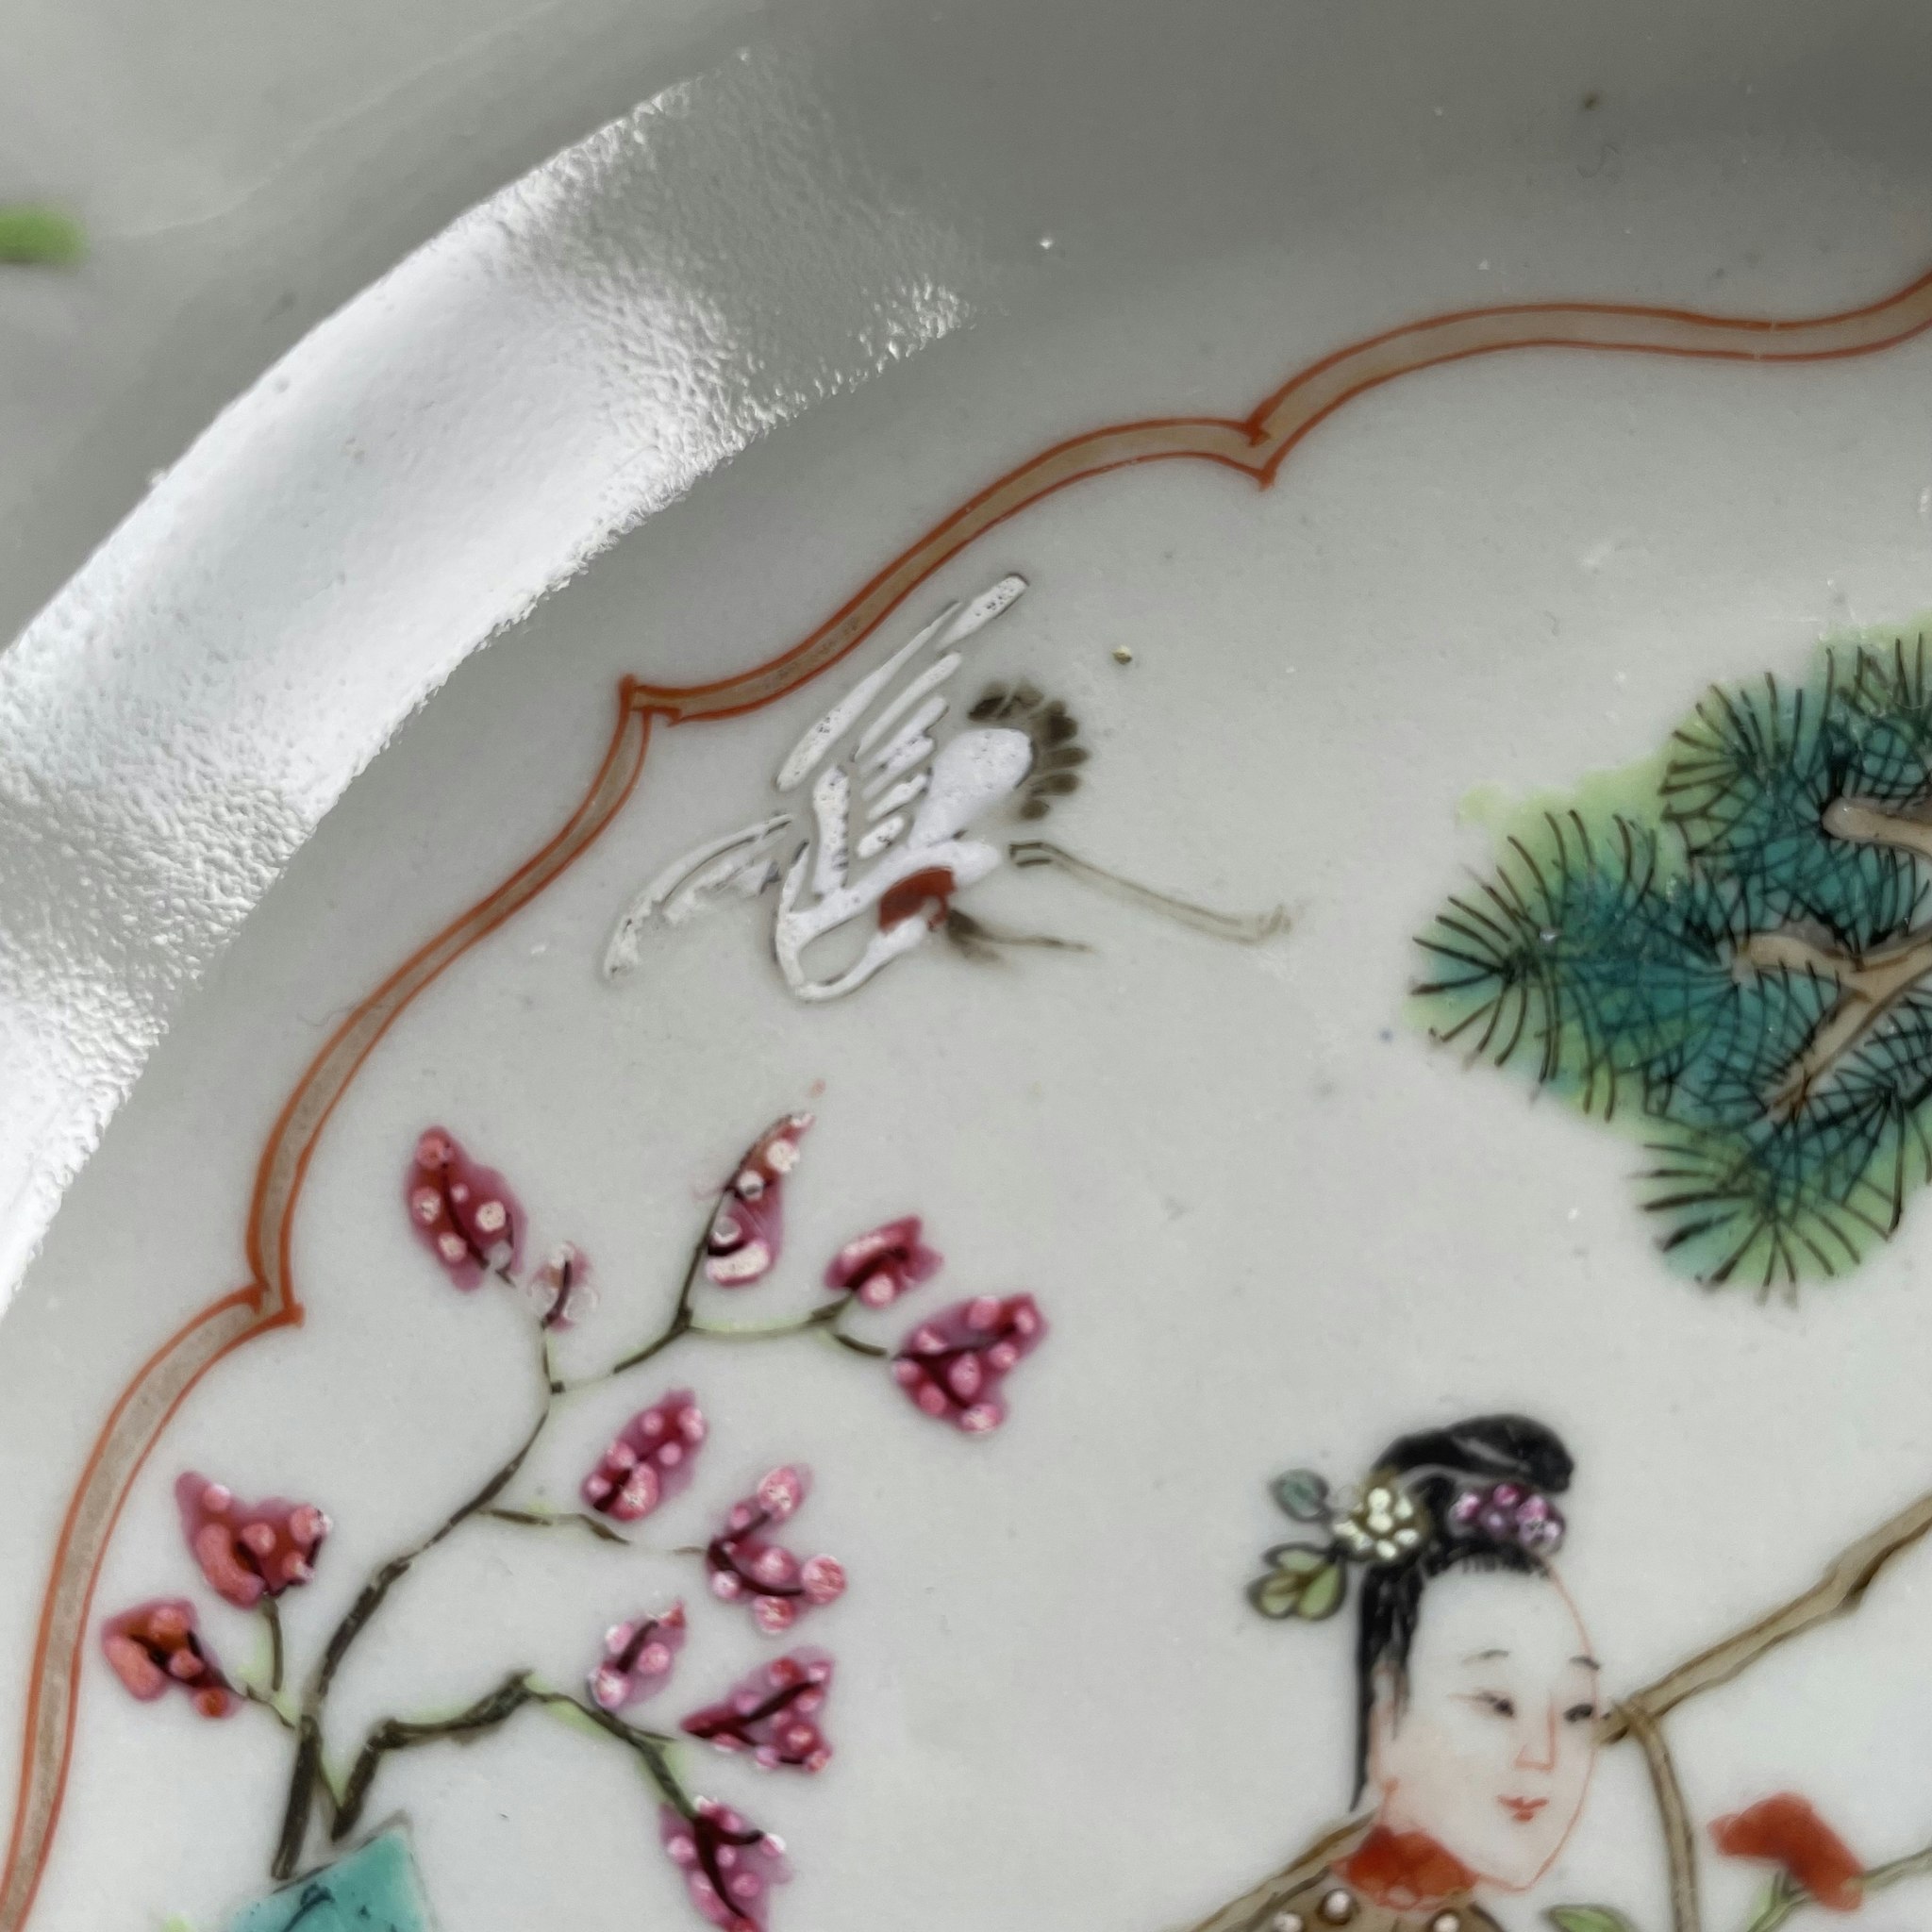 Chinese Antique Famille Rose Plate, 18th C Yongzheng / Qianlong period #1913